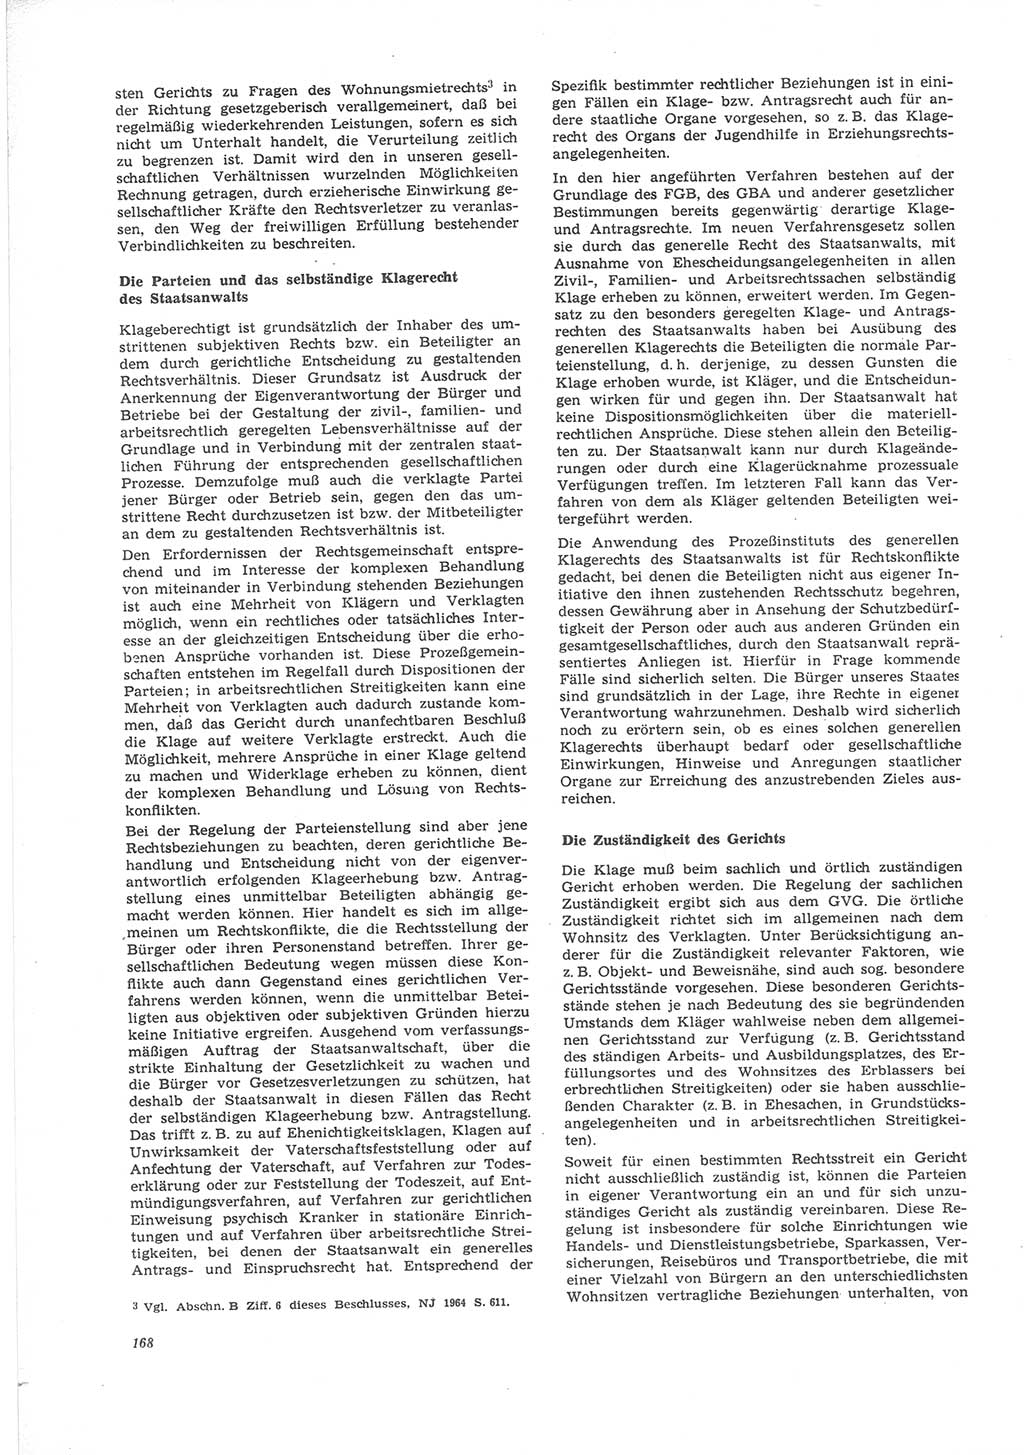 Neue Justiz (NJ), Zeitschrift für Recht und Rechtswissenschaft [Deutsche Demokratische Republik (DDR)], 24. Jahrgang 1970, Seite 168 (NJ DDR 1970, S. 168)